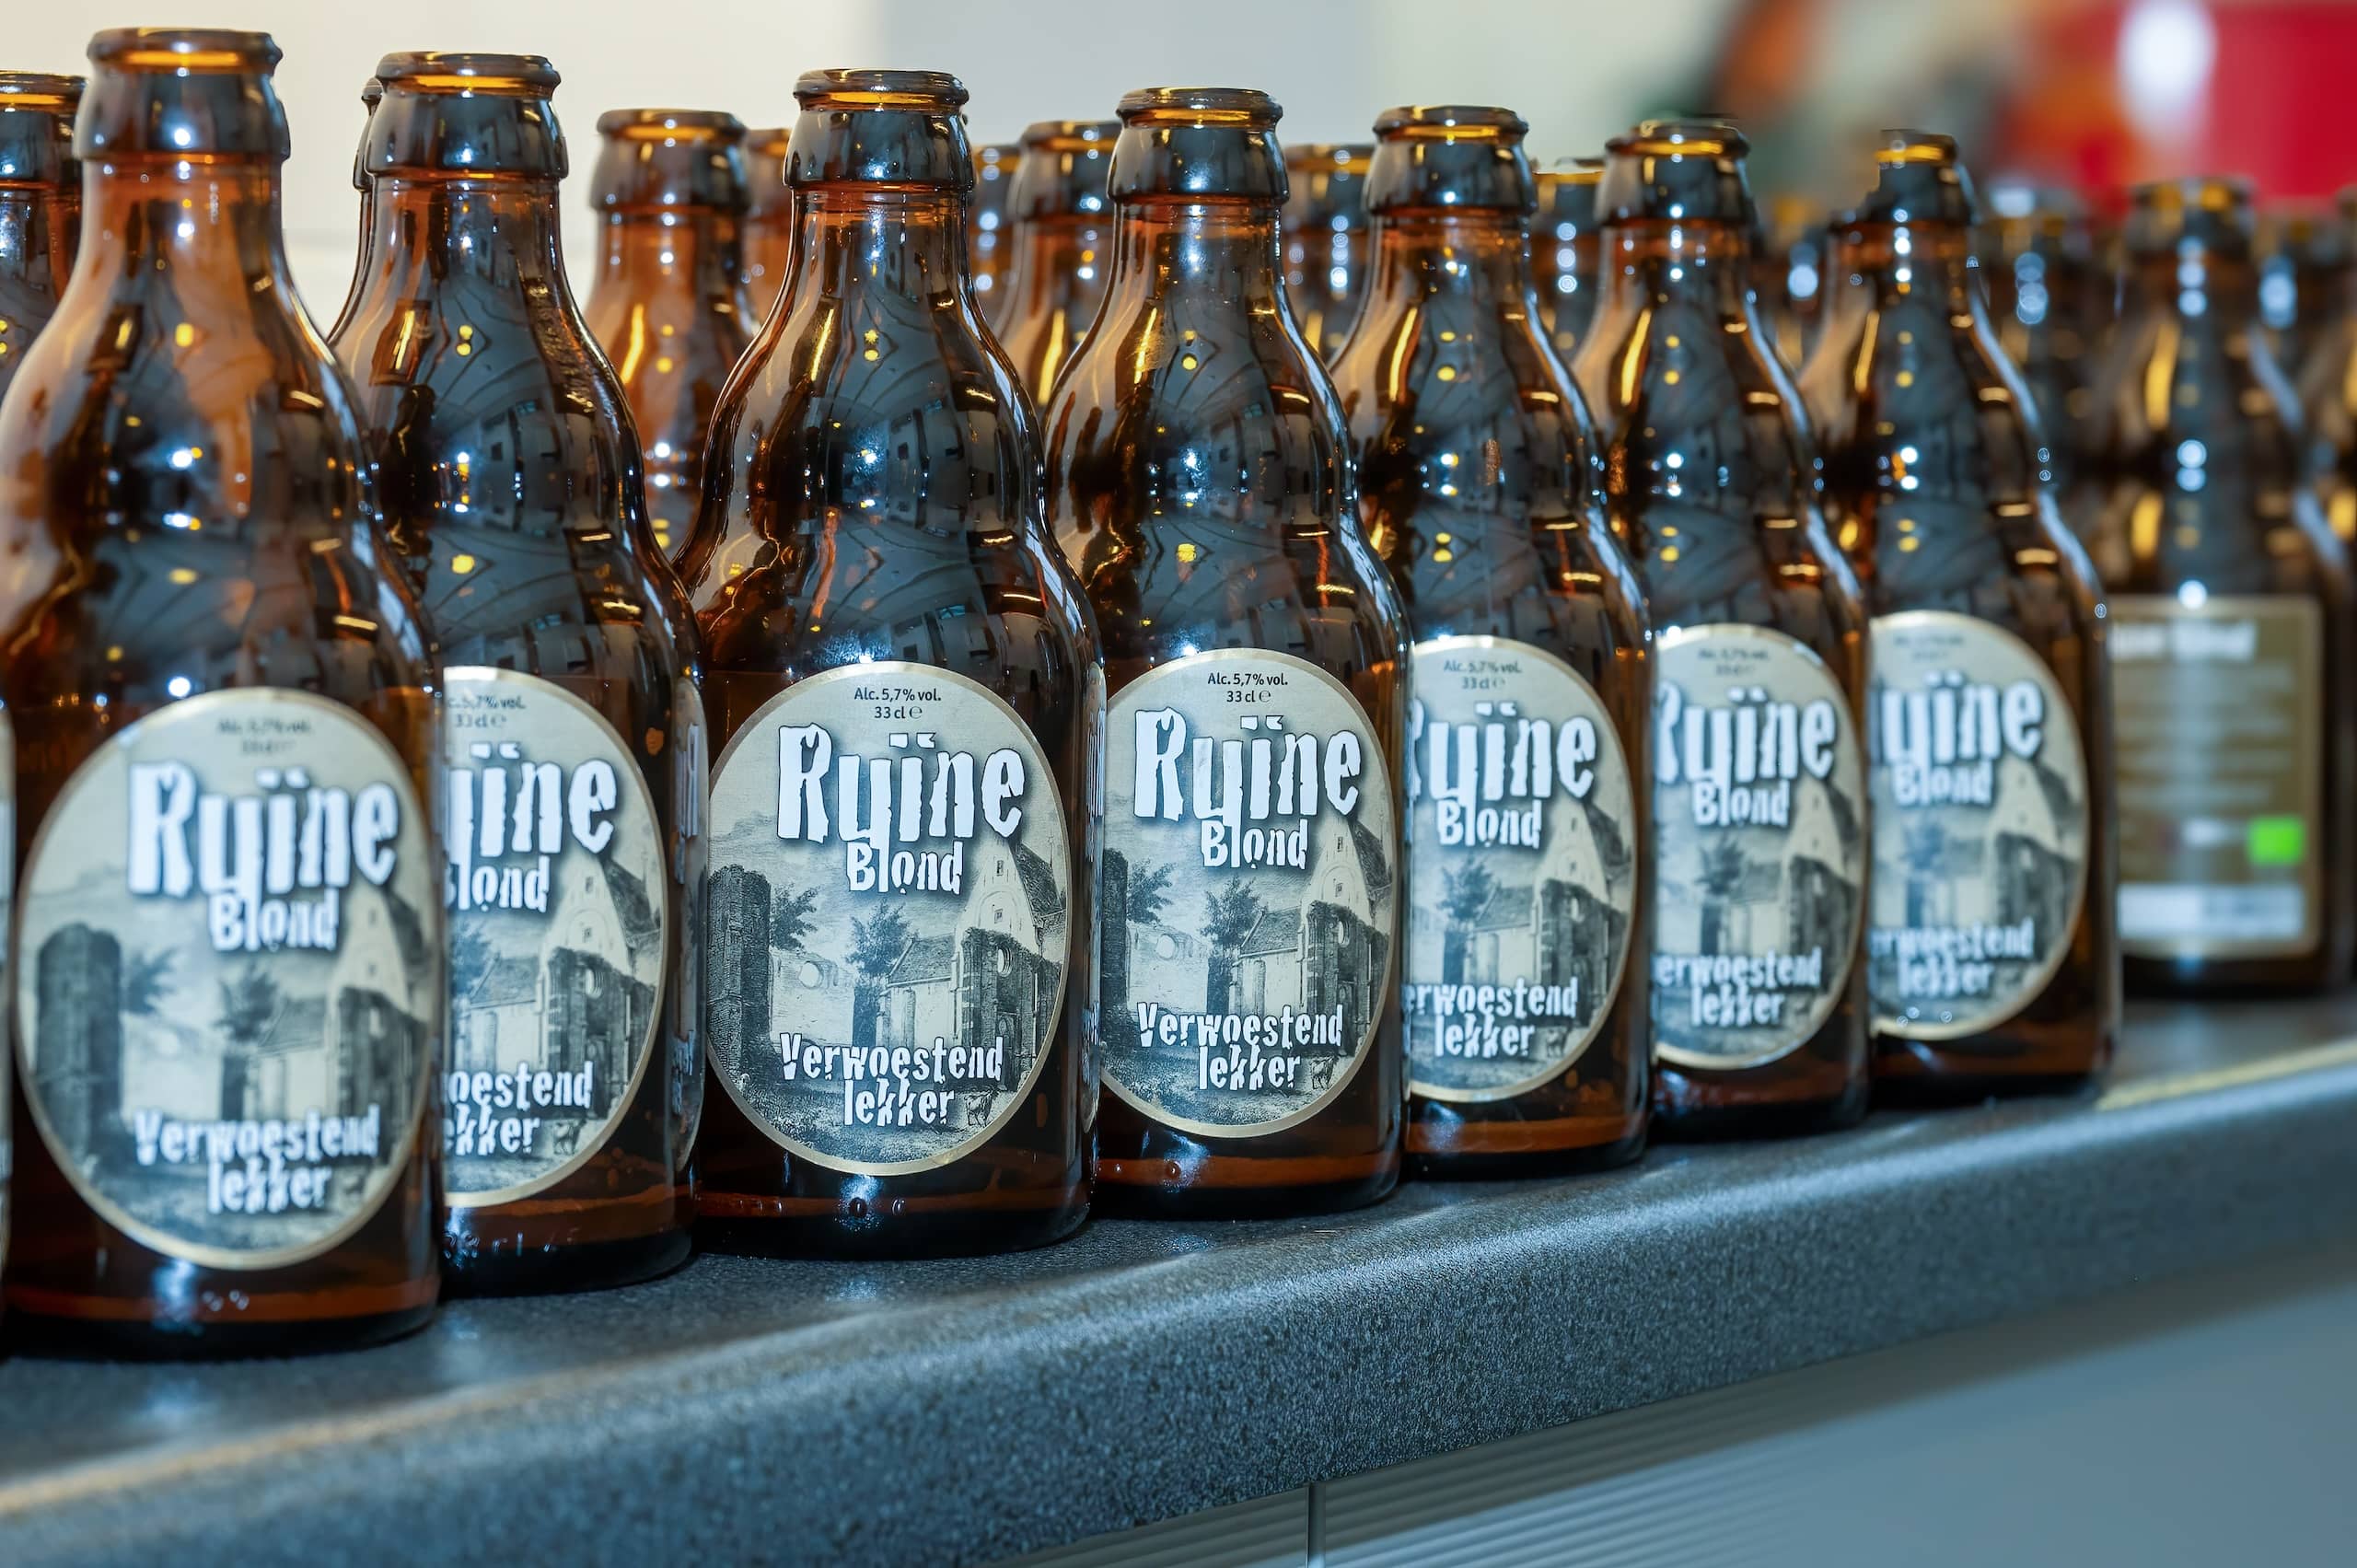 Brouwerij Egmond presenteert bier “Ruïne Blond”